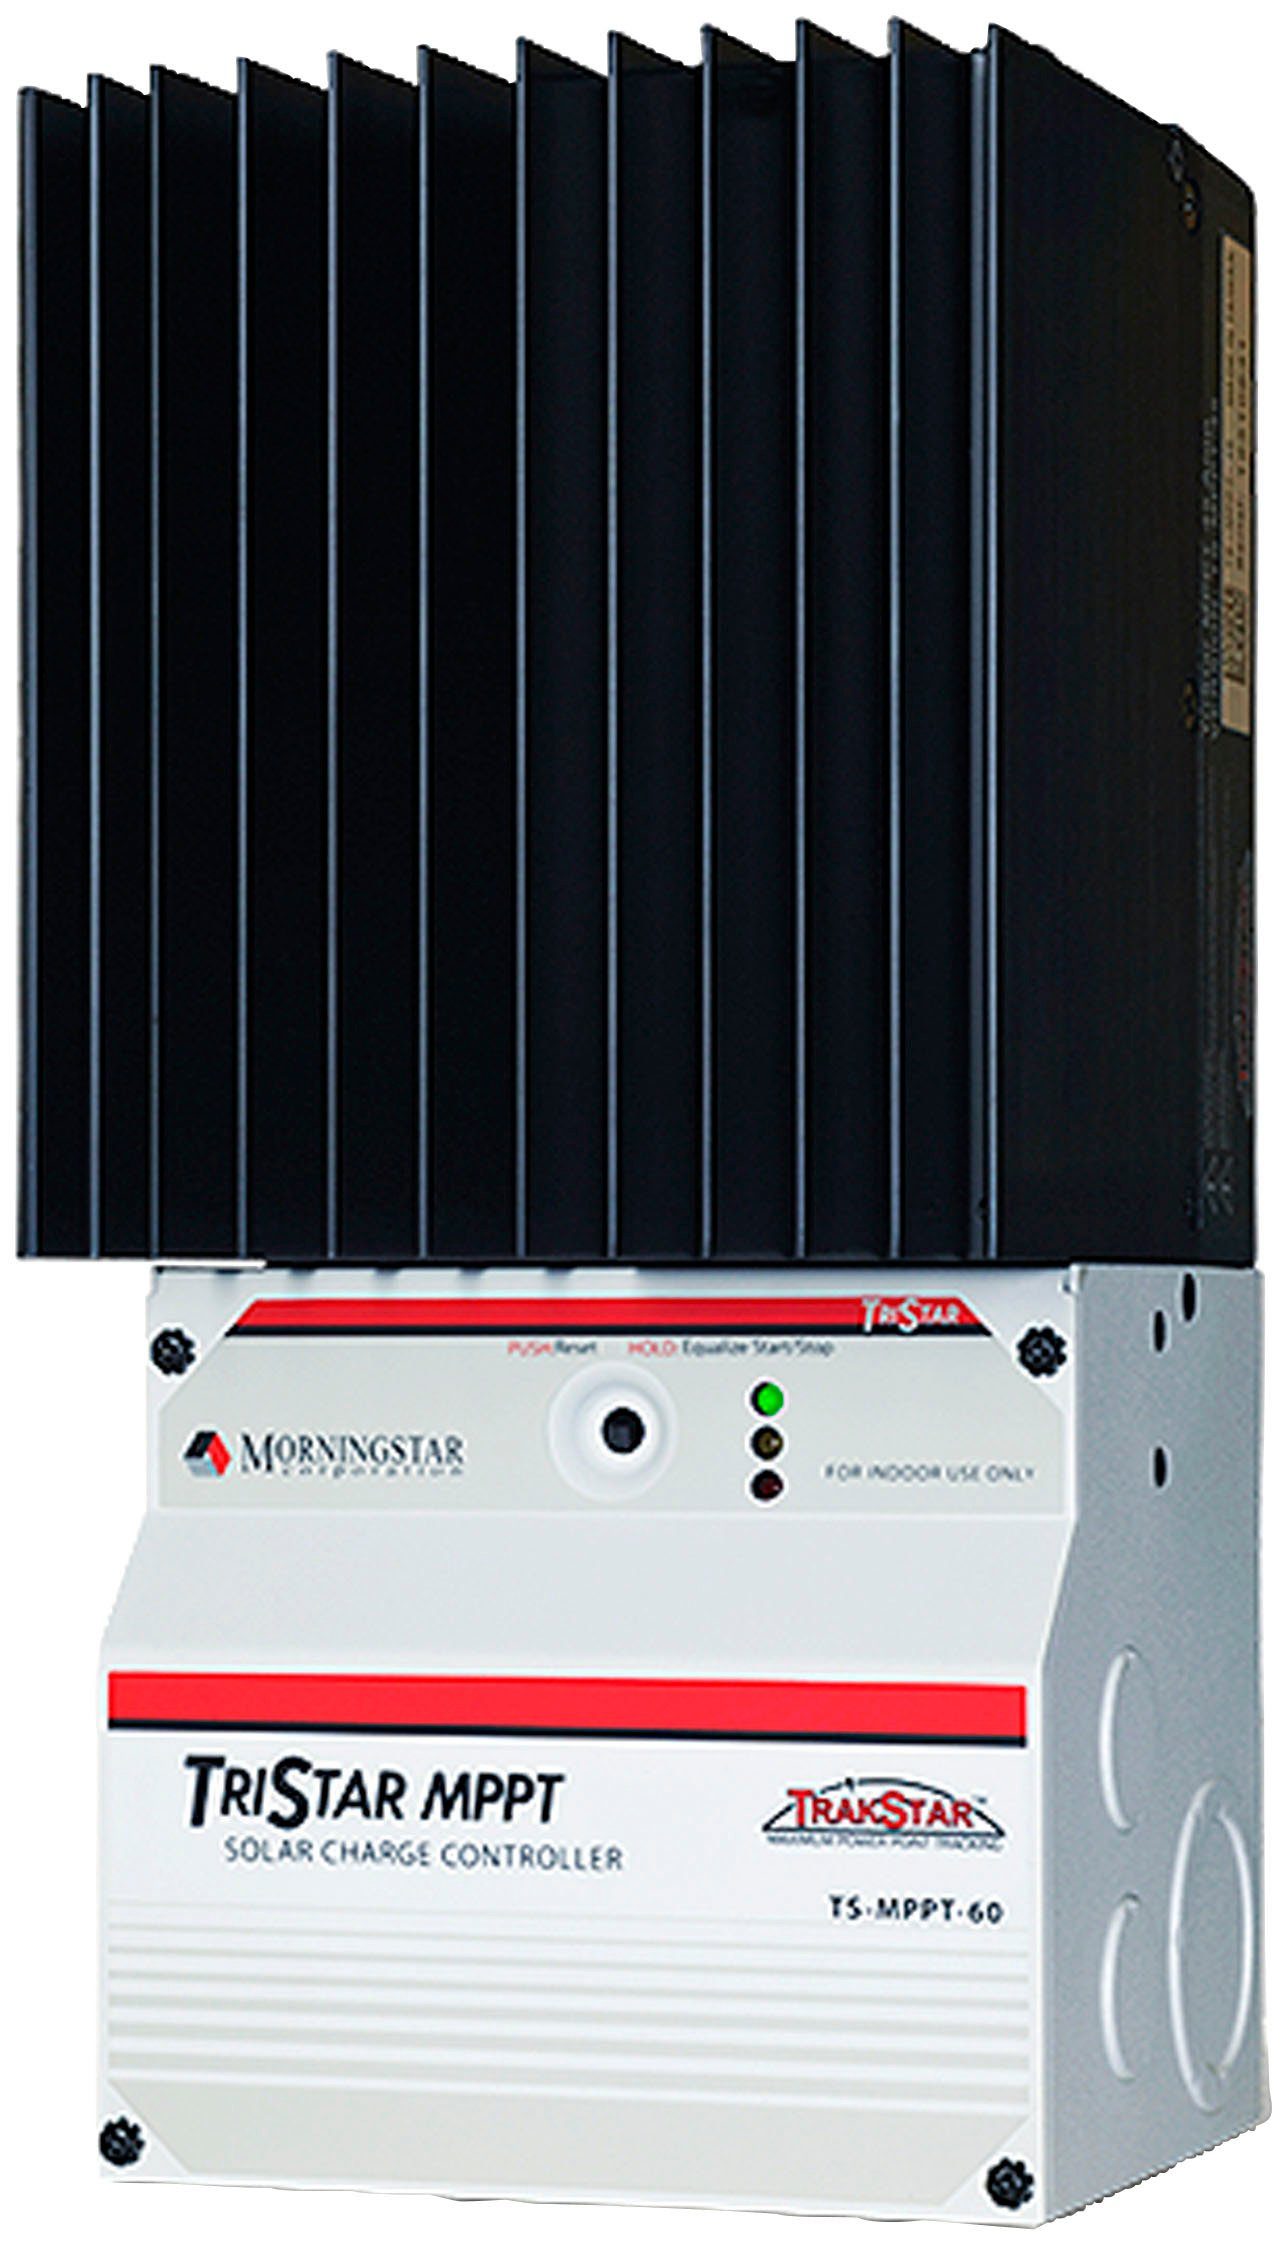 Morningstar Solarladeregler Morningstar TS-MPPT-30, Leistung maximal in Watt: 400 / 800 / 1600